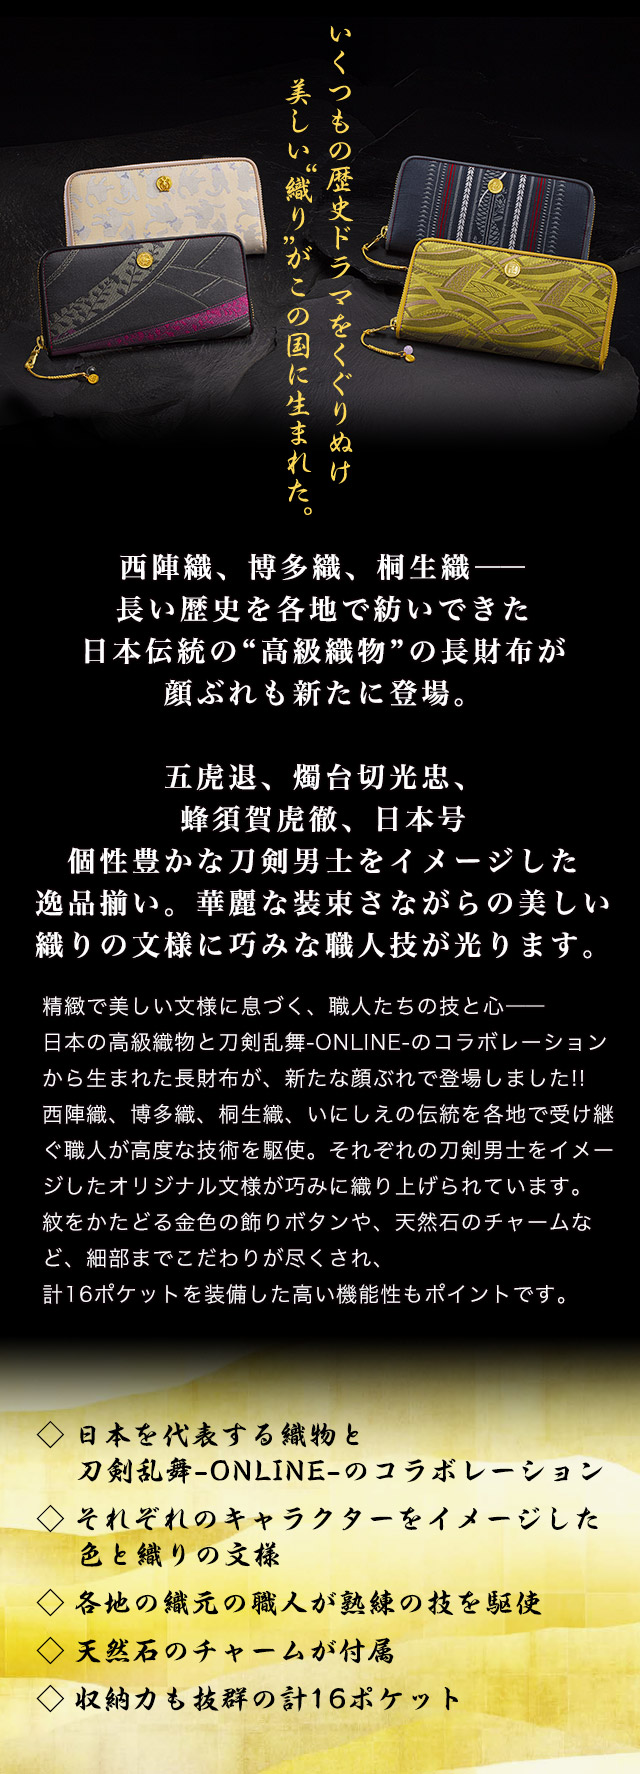 プレミコ】刀剣乱舞-ONLINE-×日本の織物 長財布 第三弾【全4種